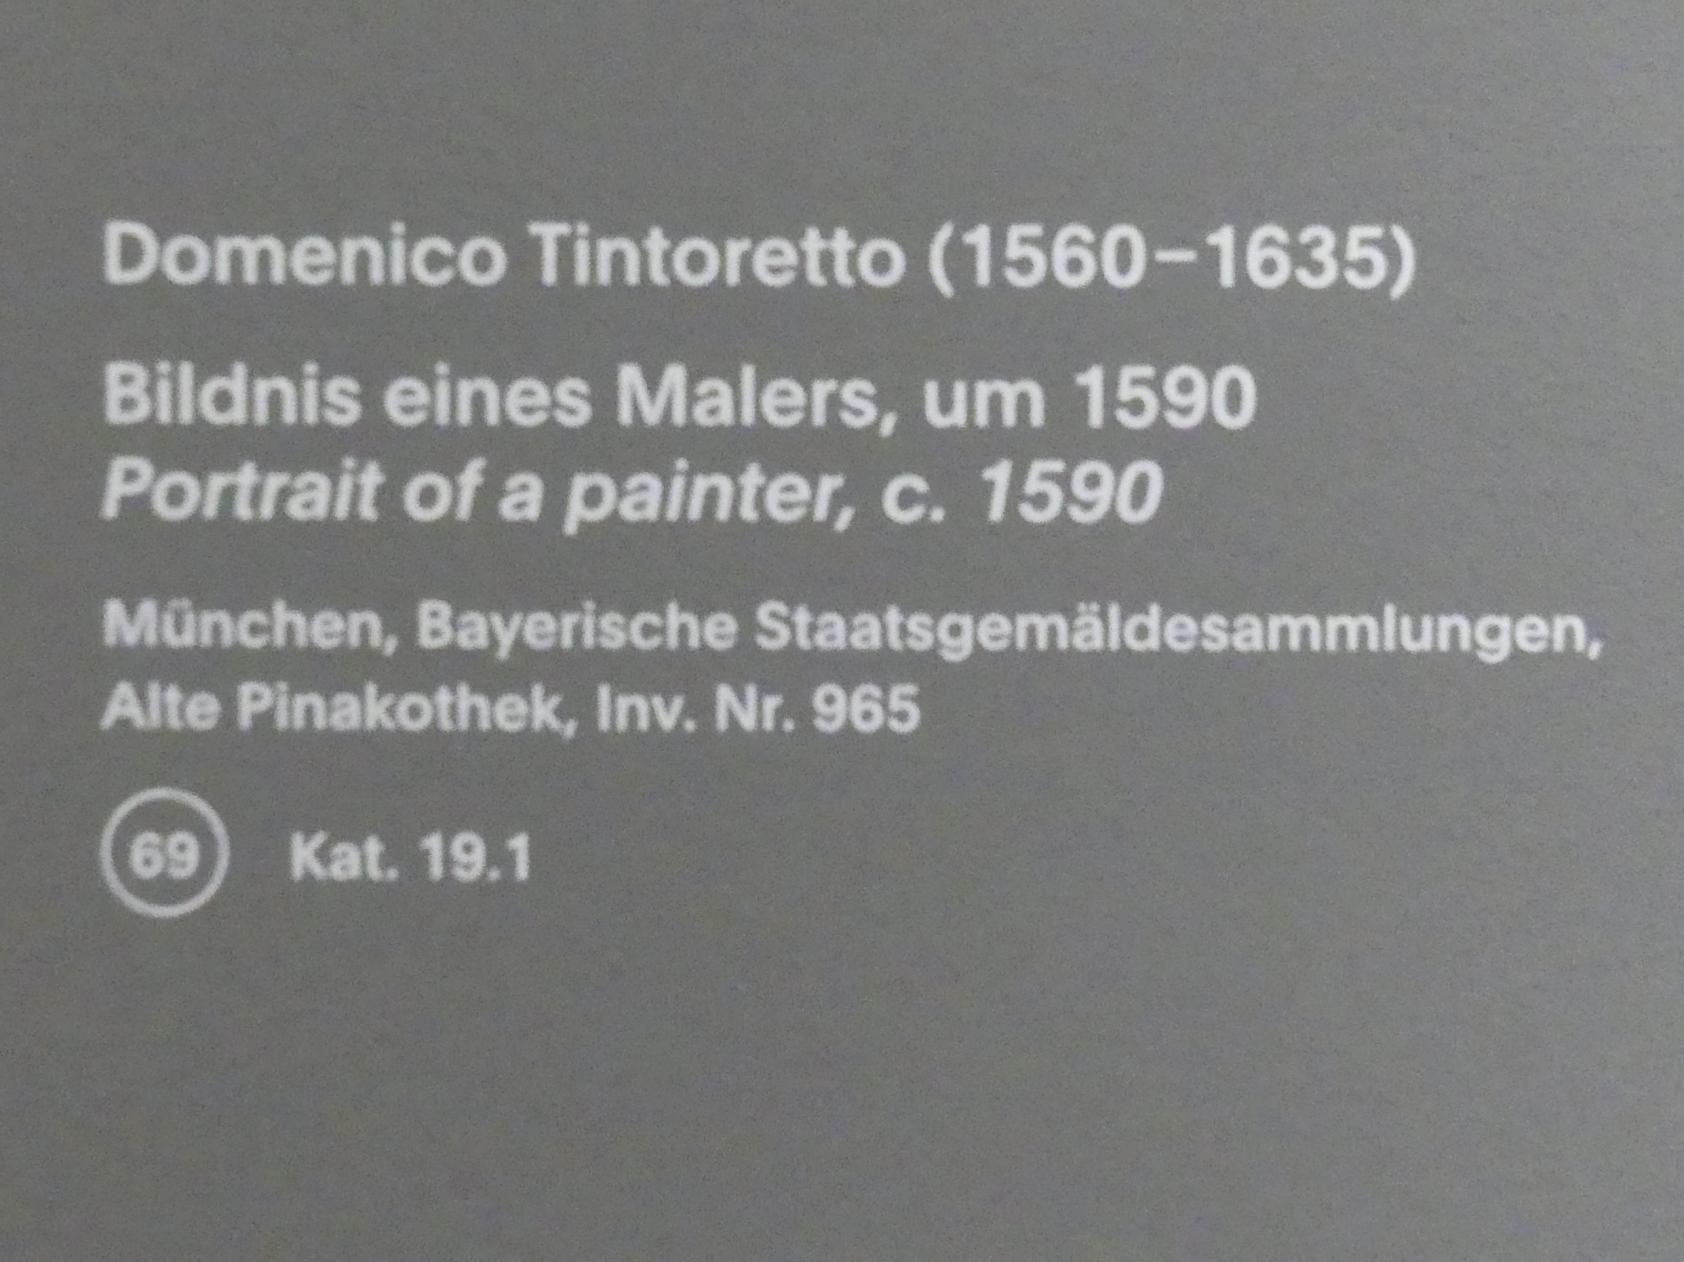 Domenico Robusti (Domenico Tintoretto) (1579–1605), Bildnis eines Malers, München, Alte Pinakothek, Ausstellung "Van Dyck" vom 25.10.2019-02.02.2020, Künstlerbildnisse - 1, um 1590, Bild 2/2